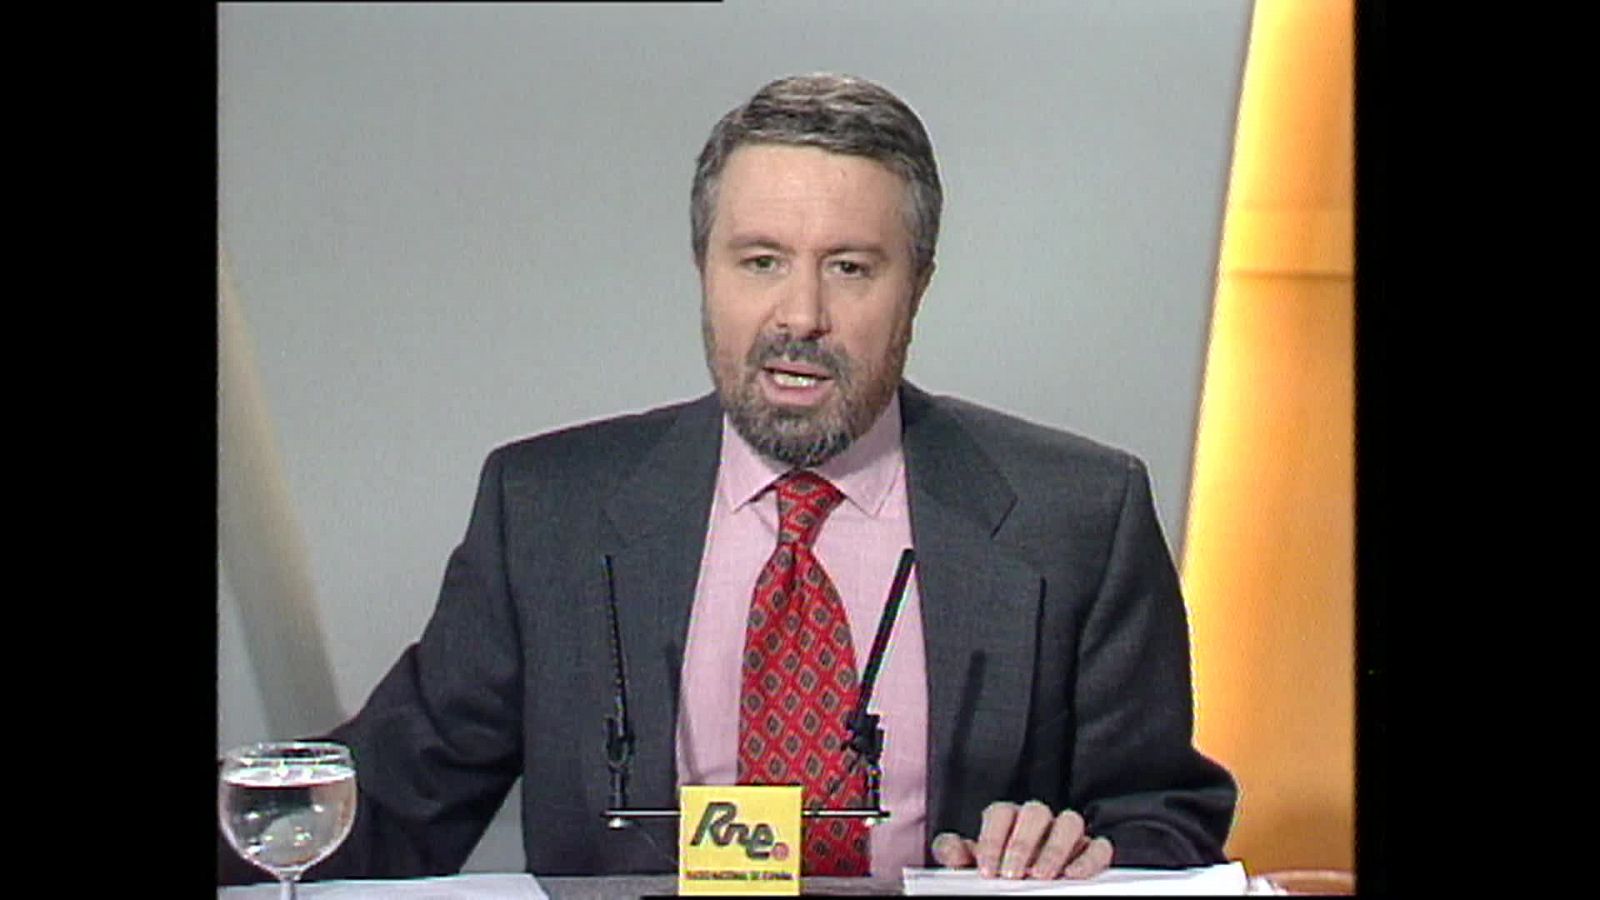 Francisco Tomás y Valiente en Los desayunos de Radio 1 (1995)